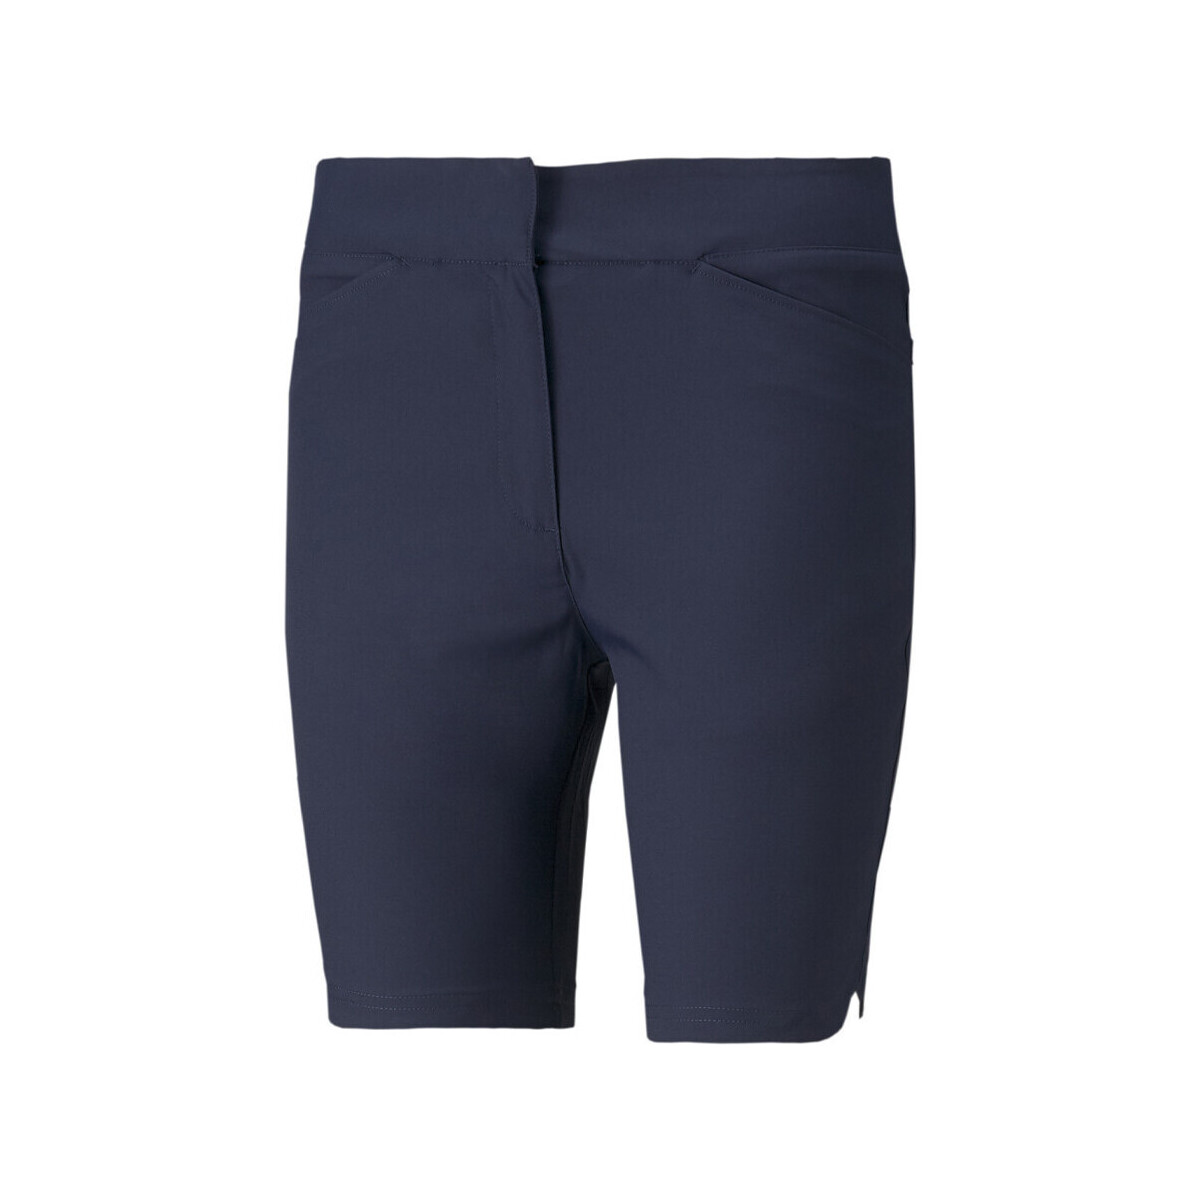 Kleidung Damen Shorts / Bermudas Puma 533013-03 Blau